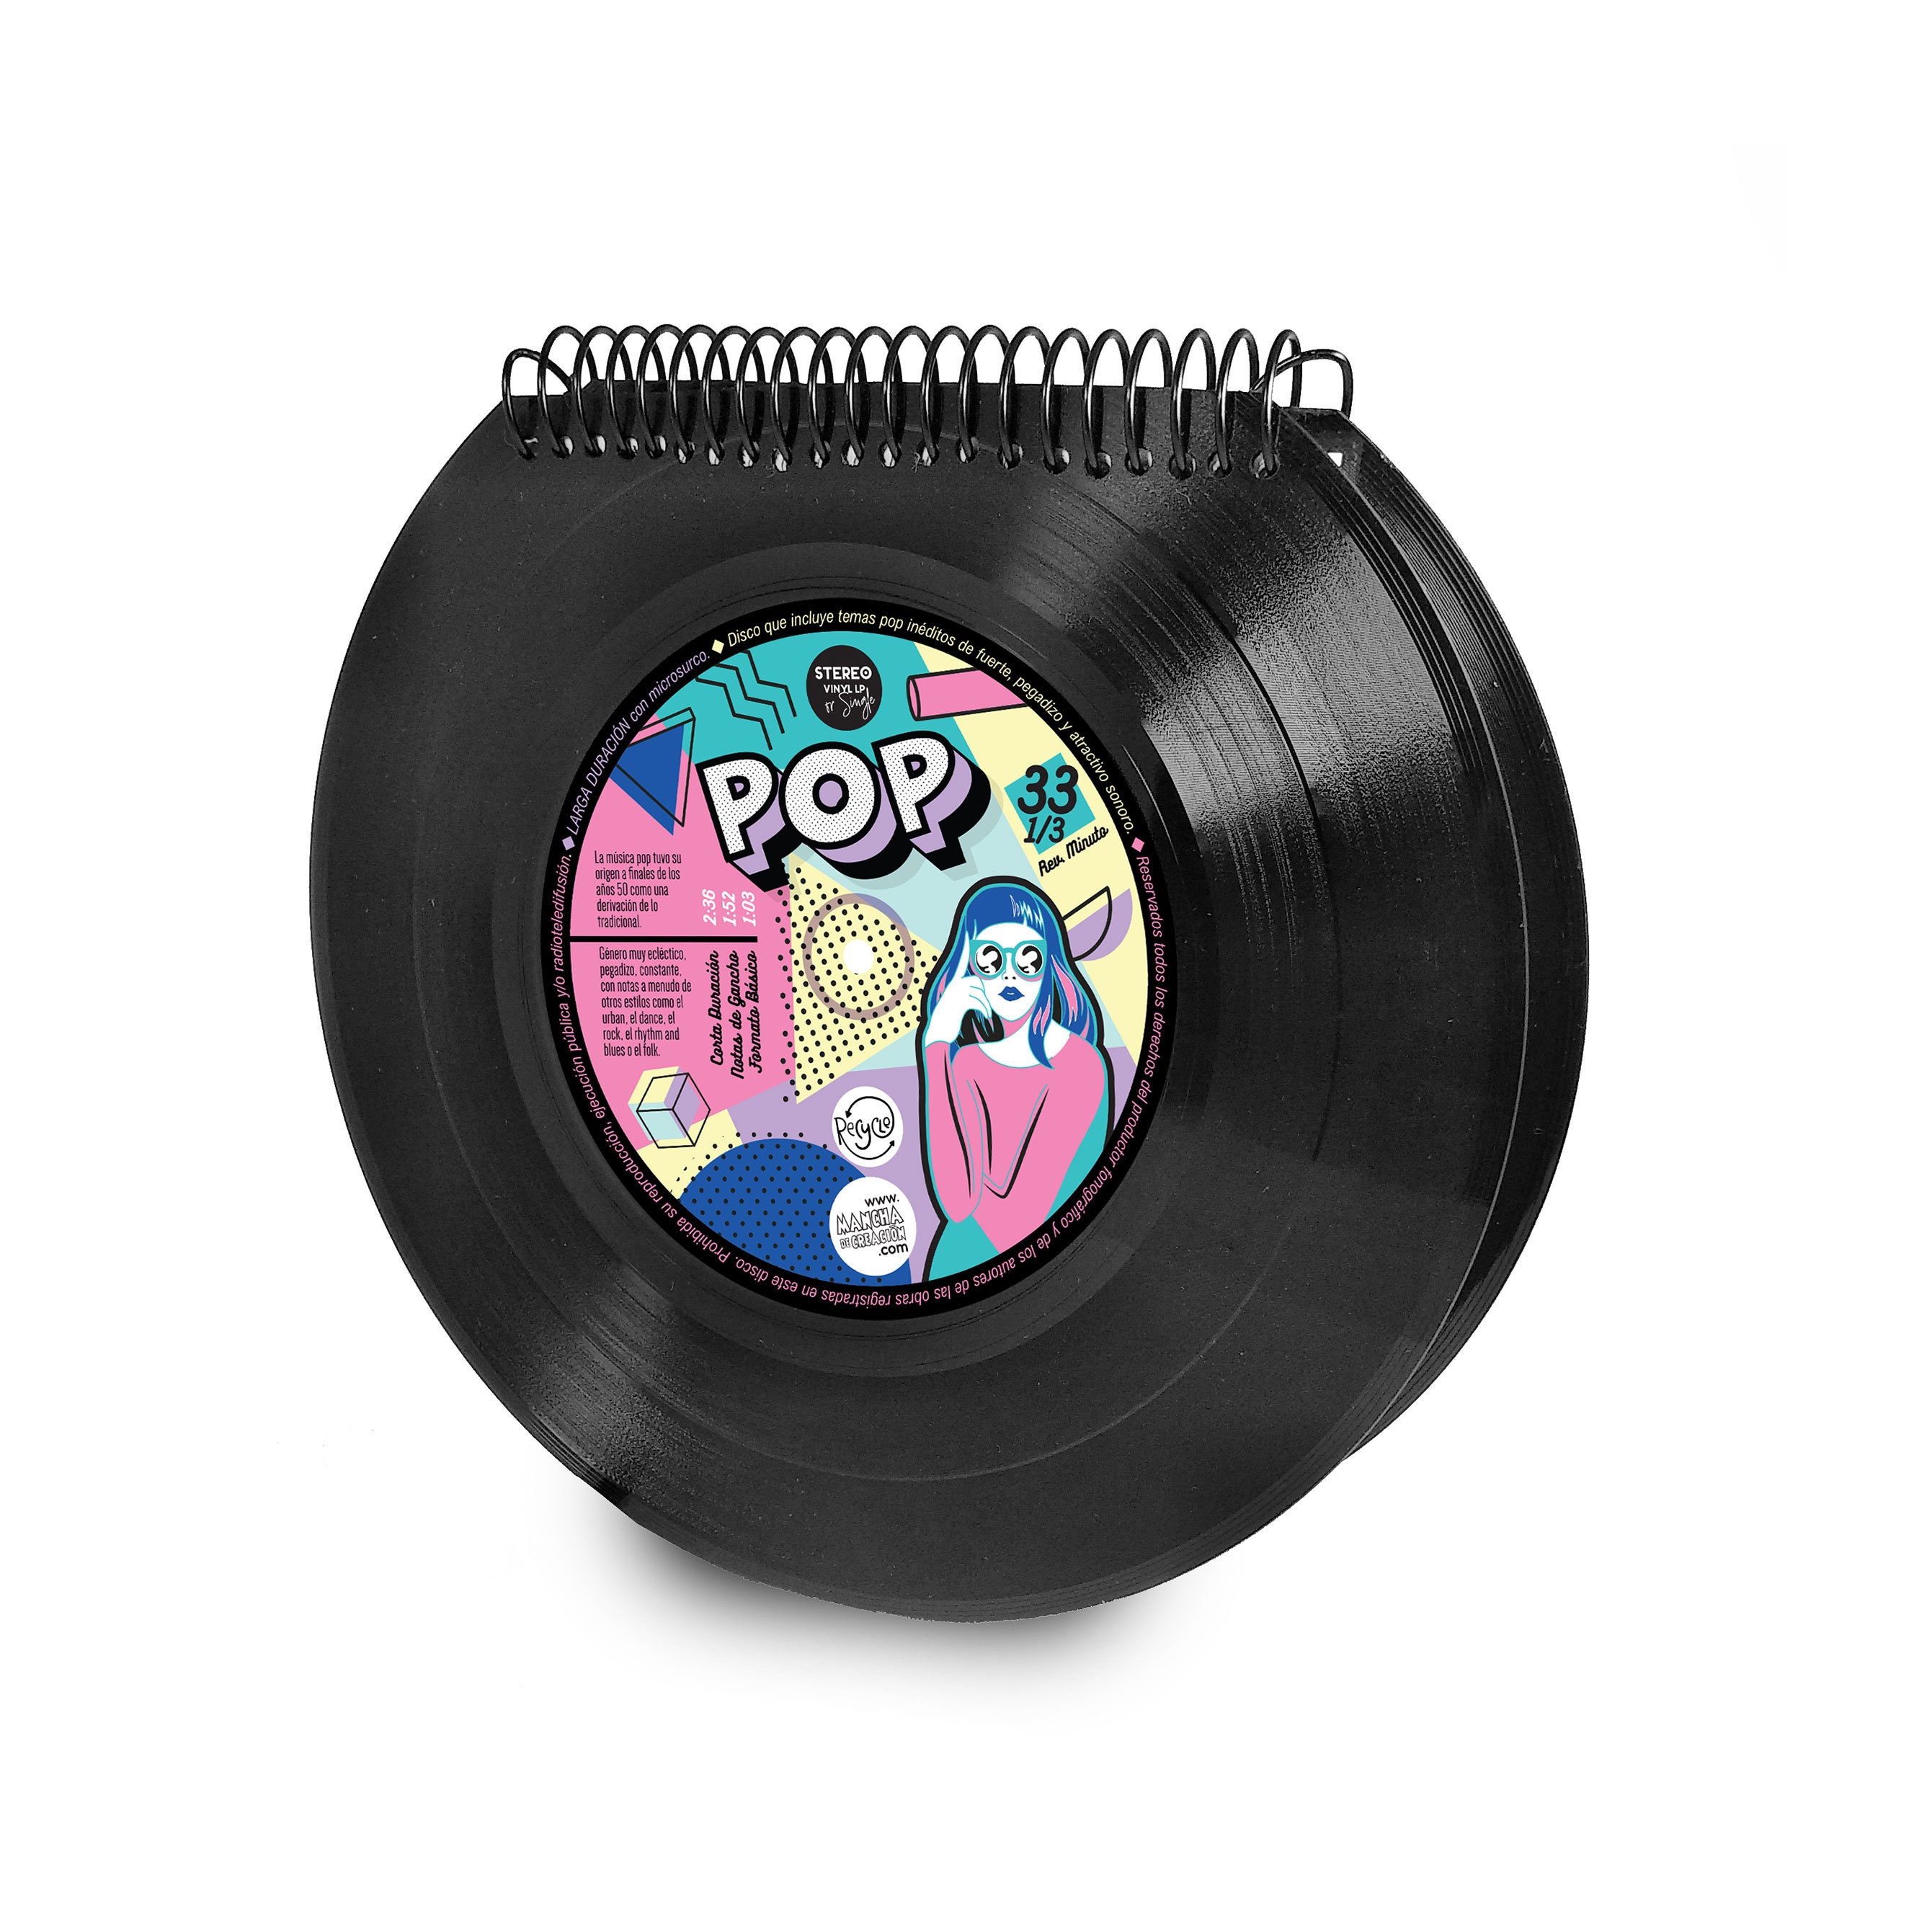 Libreta de disco de vinilo single, diseño Queen